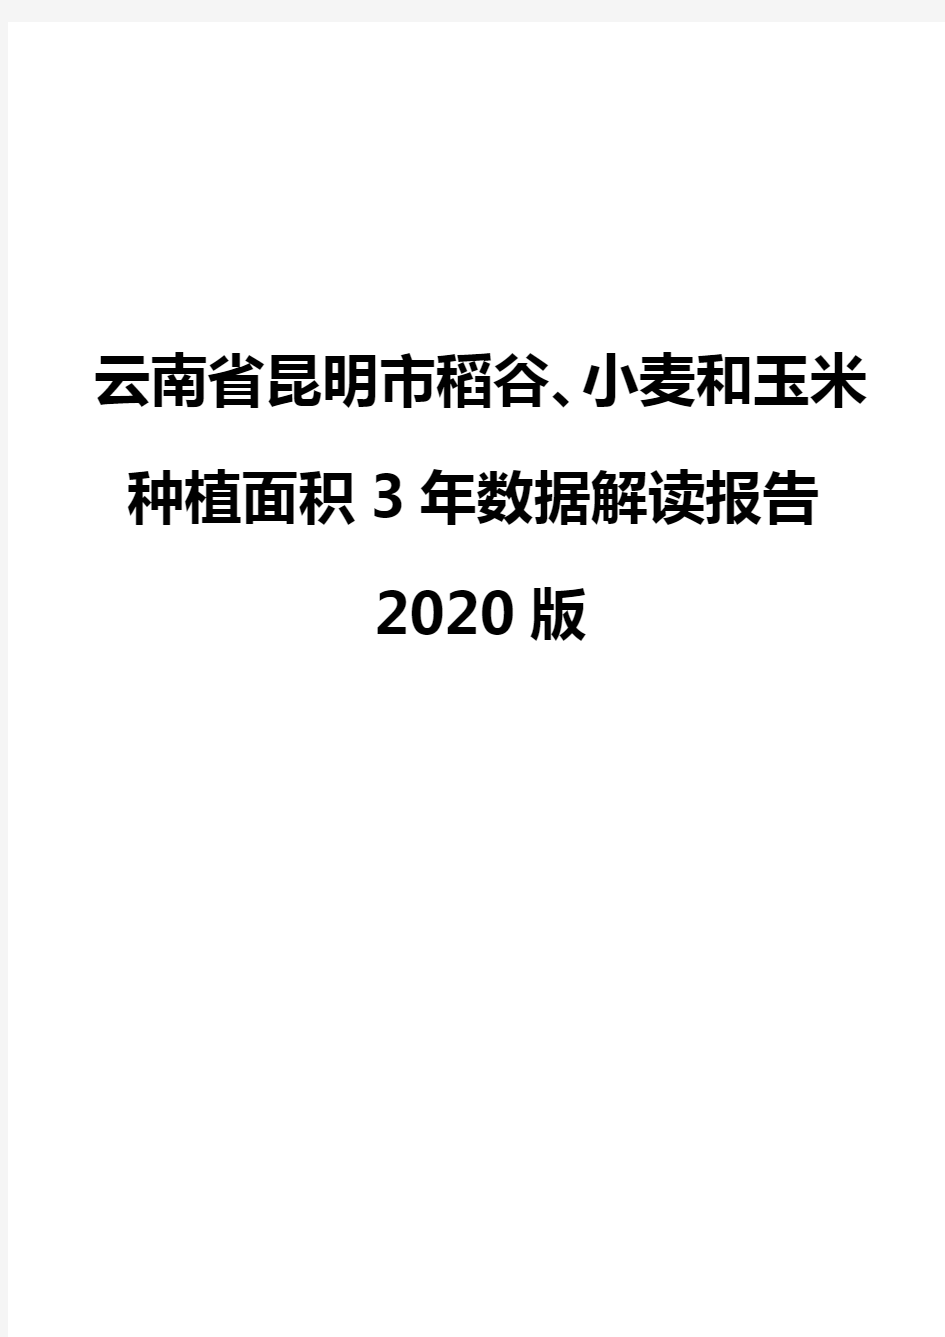 云南省昆明市稻谷、小麦和玉米种植面积3年数据解读报告2020版